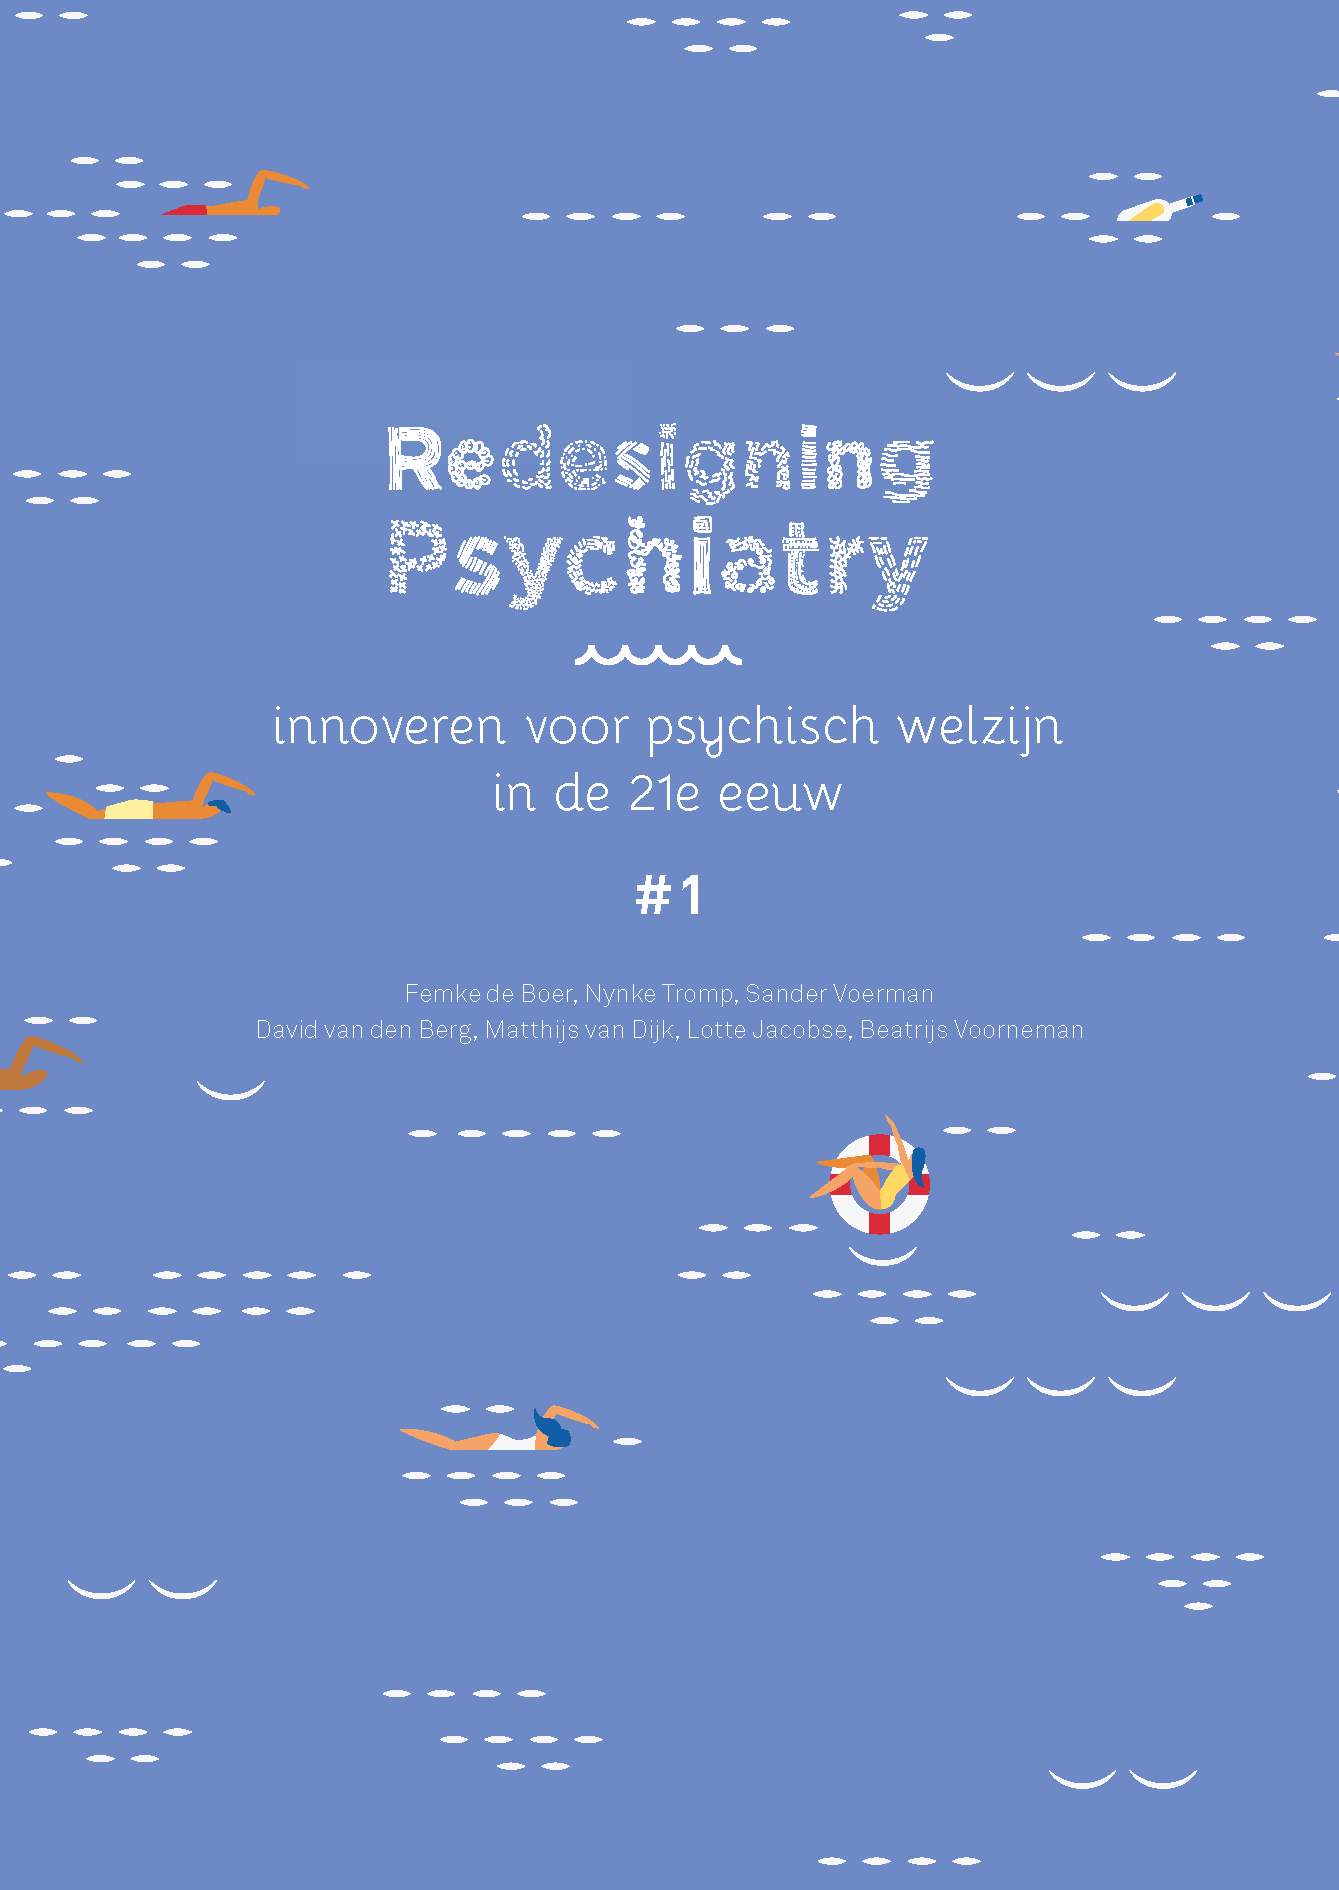 Redesigning Psychiatry, vol. 1